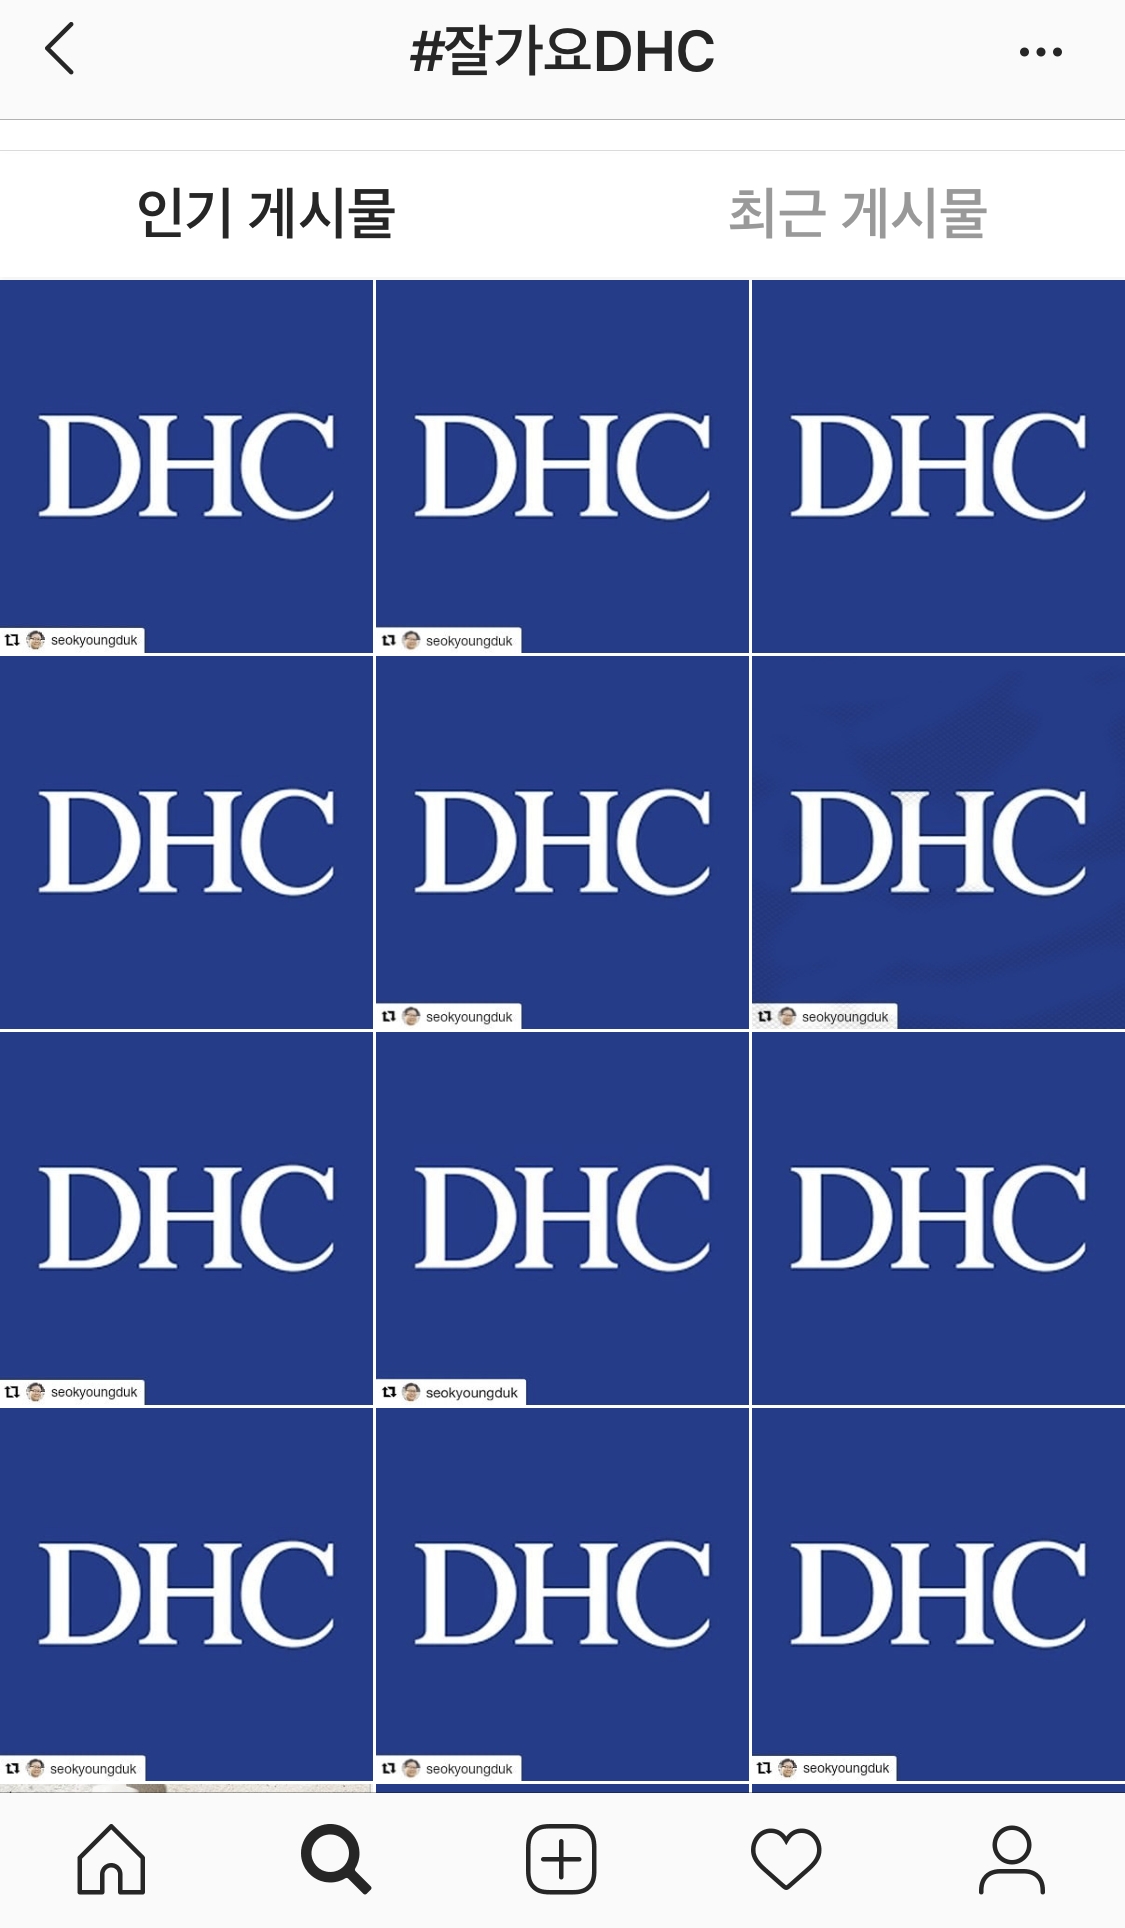 인스타그램에 '#잘가요DHC' 해시태그를 단 게시물들이 올라오고 있다.